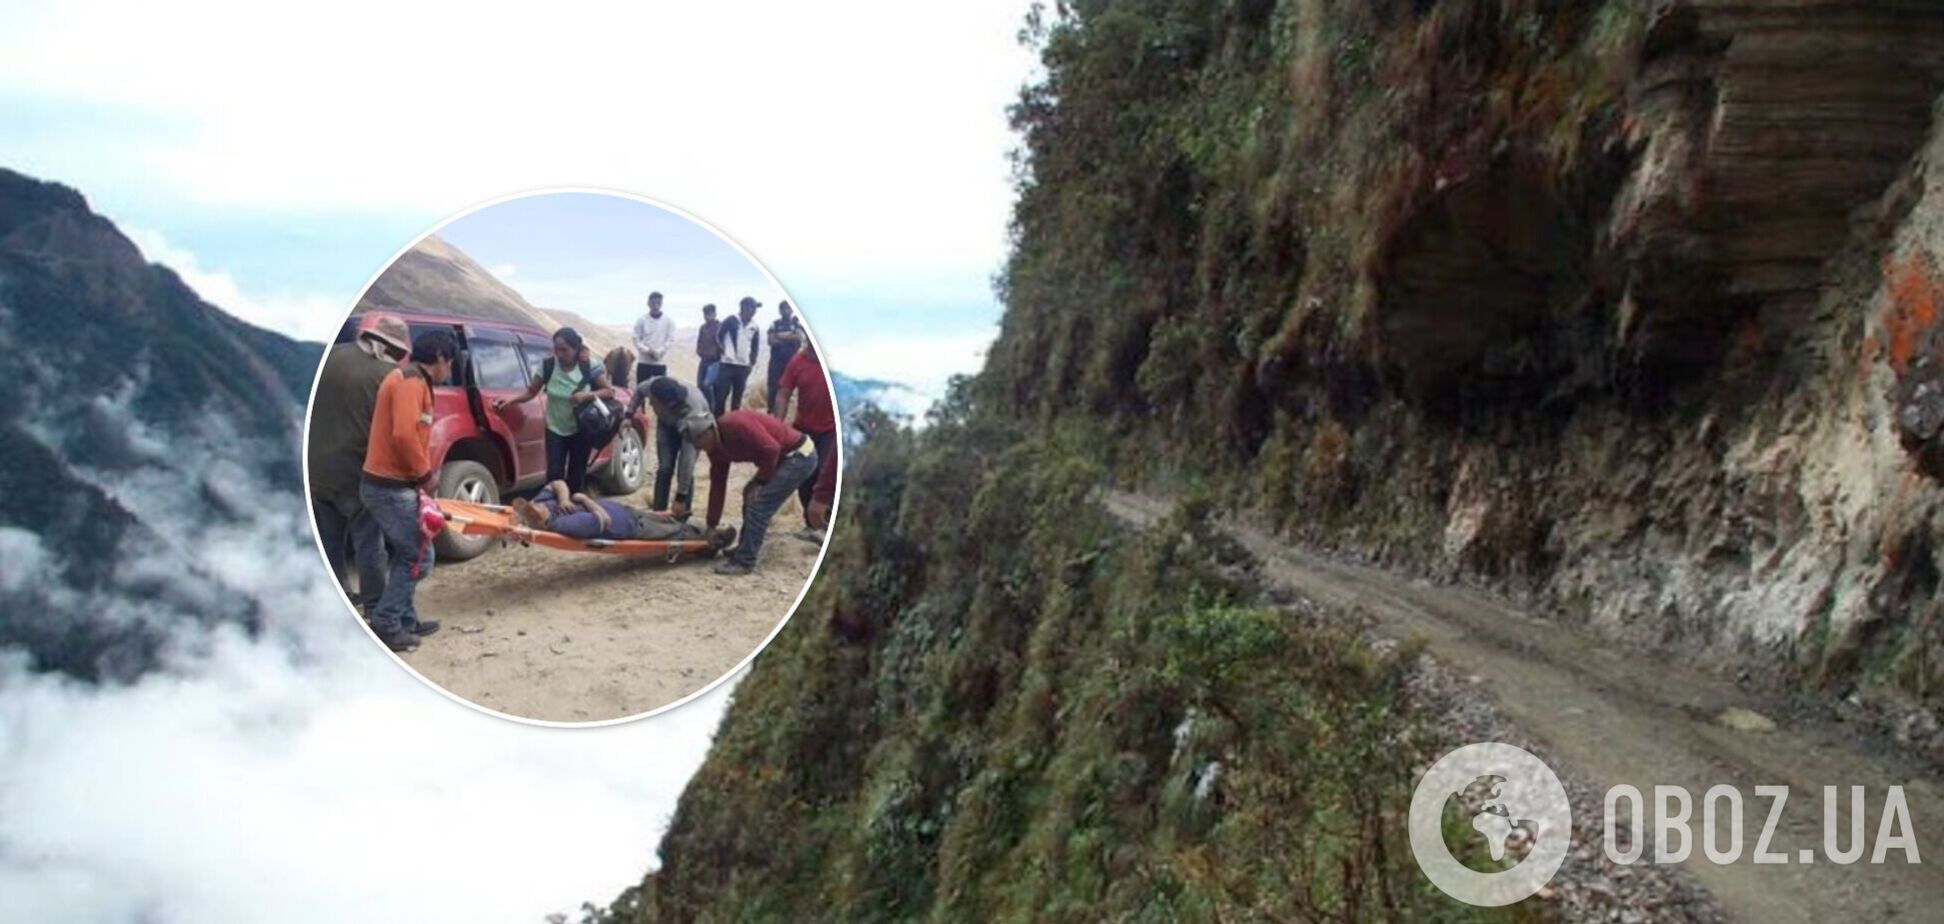 У Болівії пасажирський автобус зірвався в ущелину з висоти 200 м, загинули десятки осіб. Фото